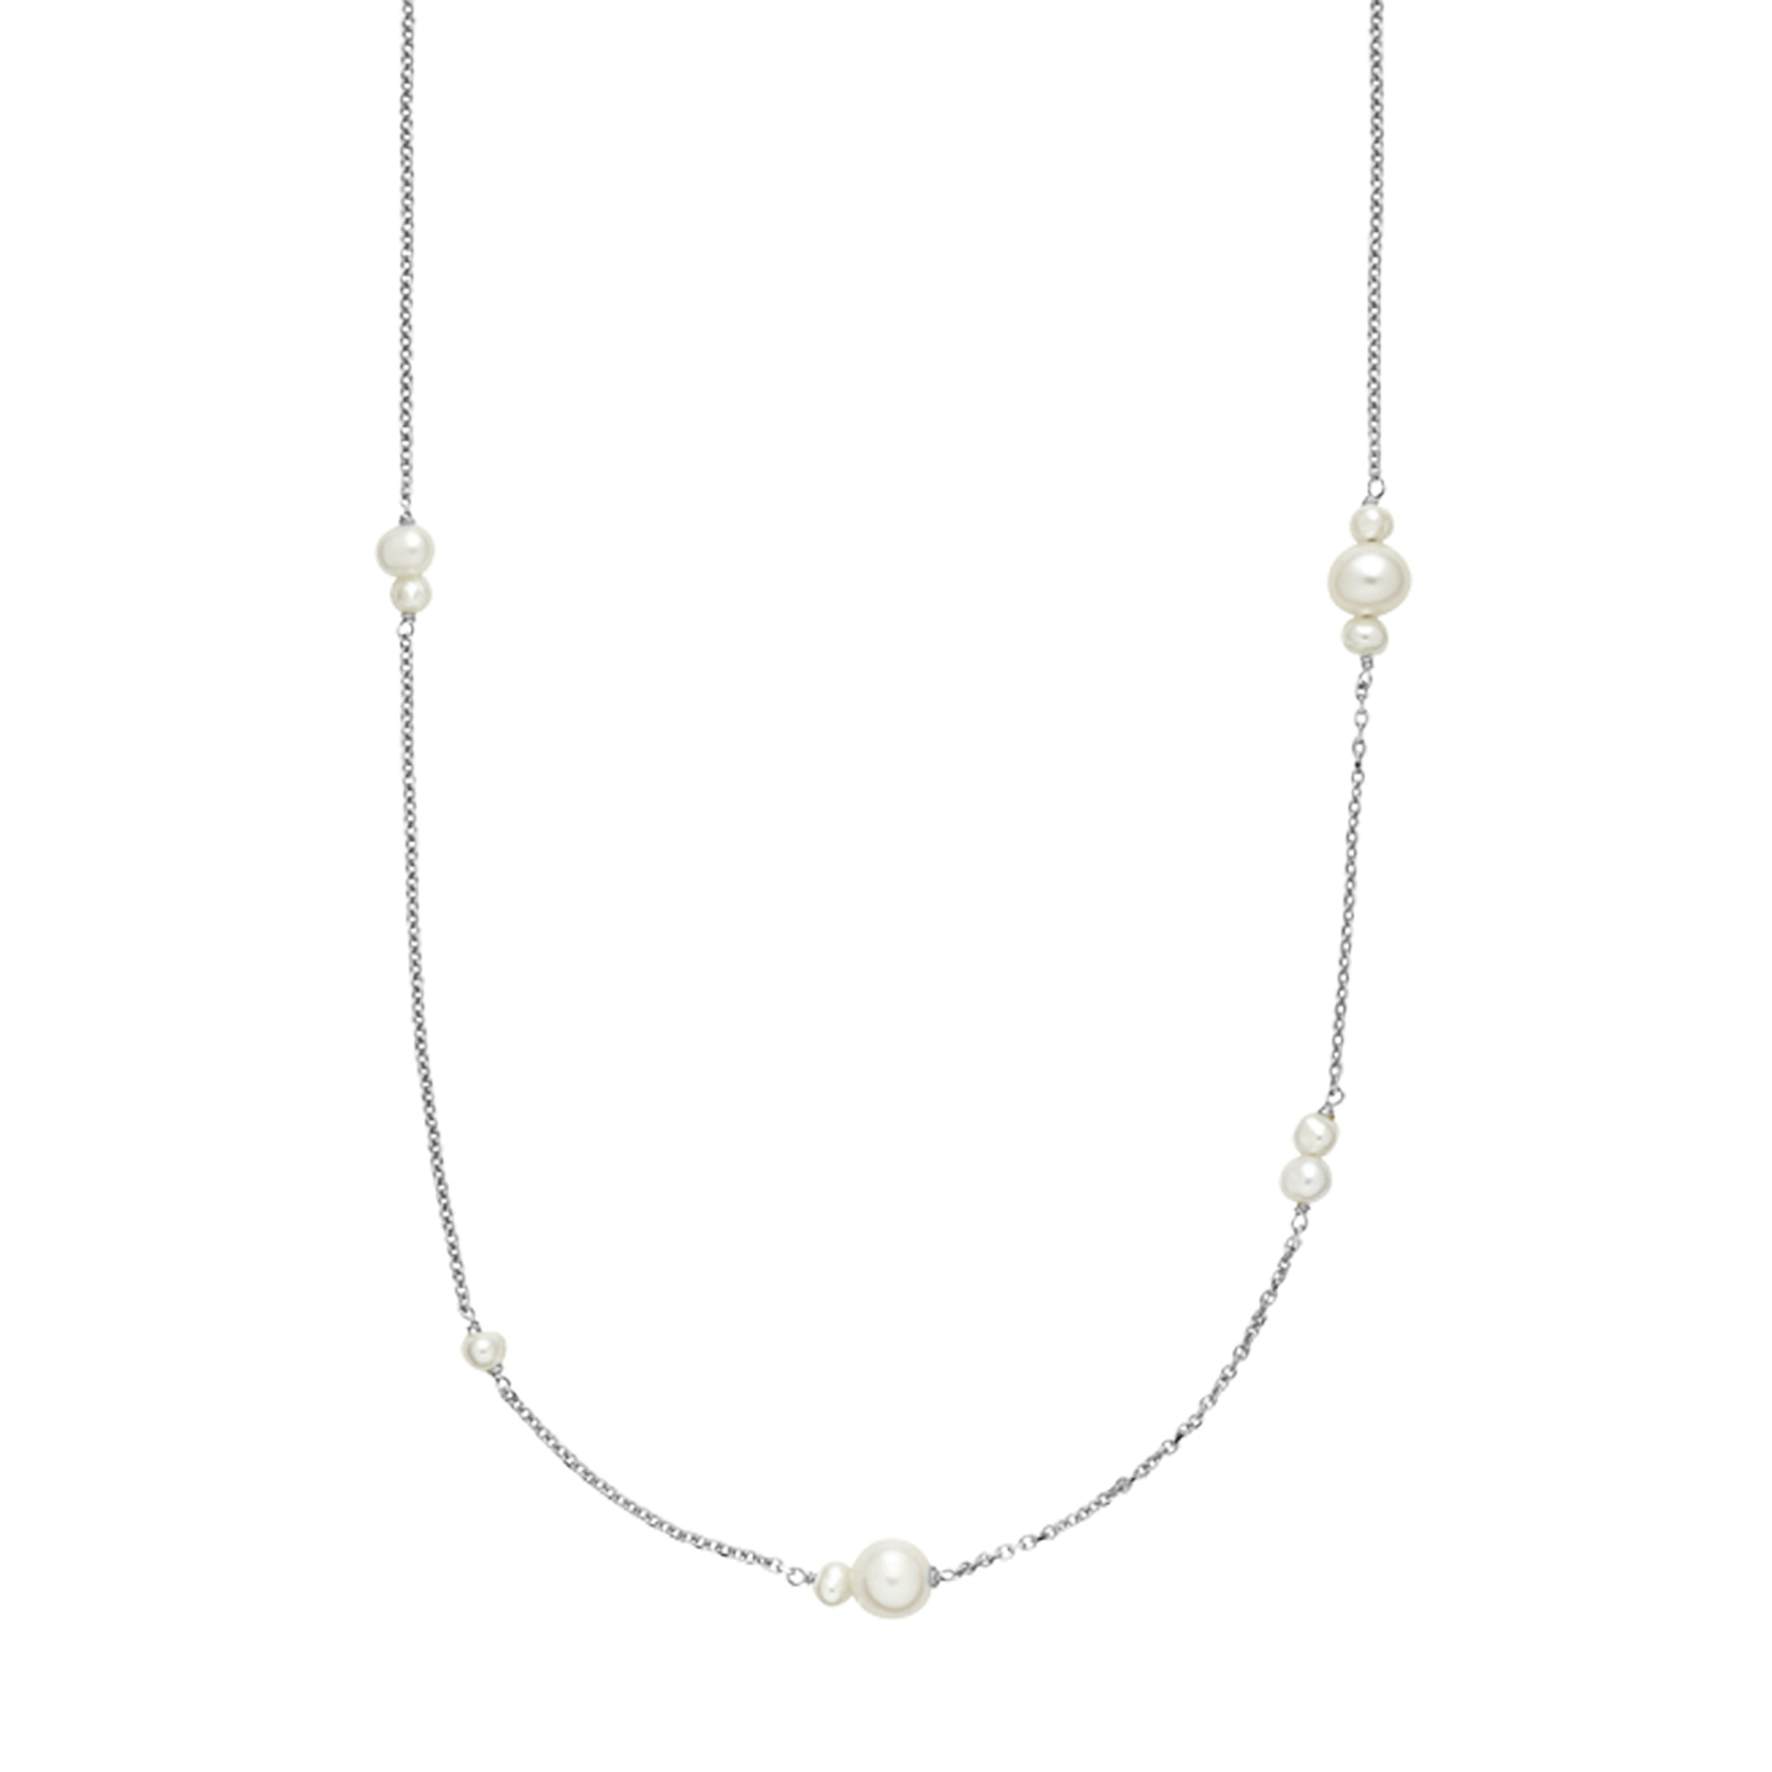 Majesty Necklace With Pearls fra Izabel Camille i Sølv Sterling 925